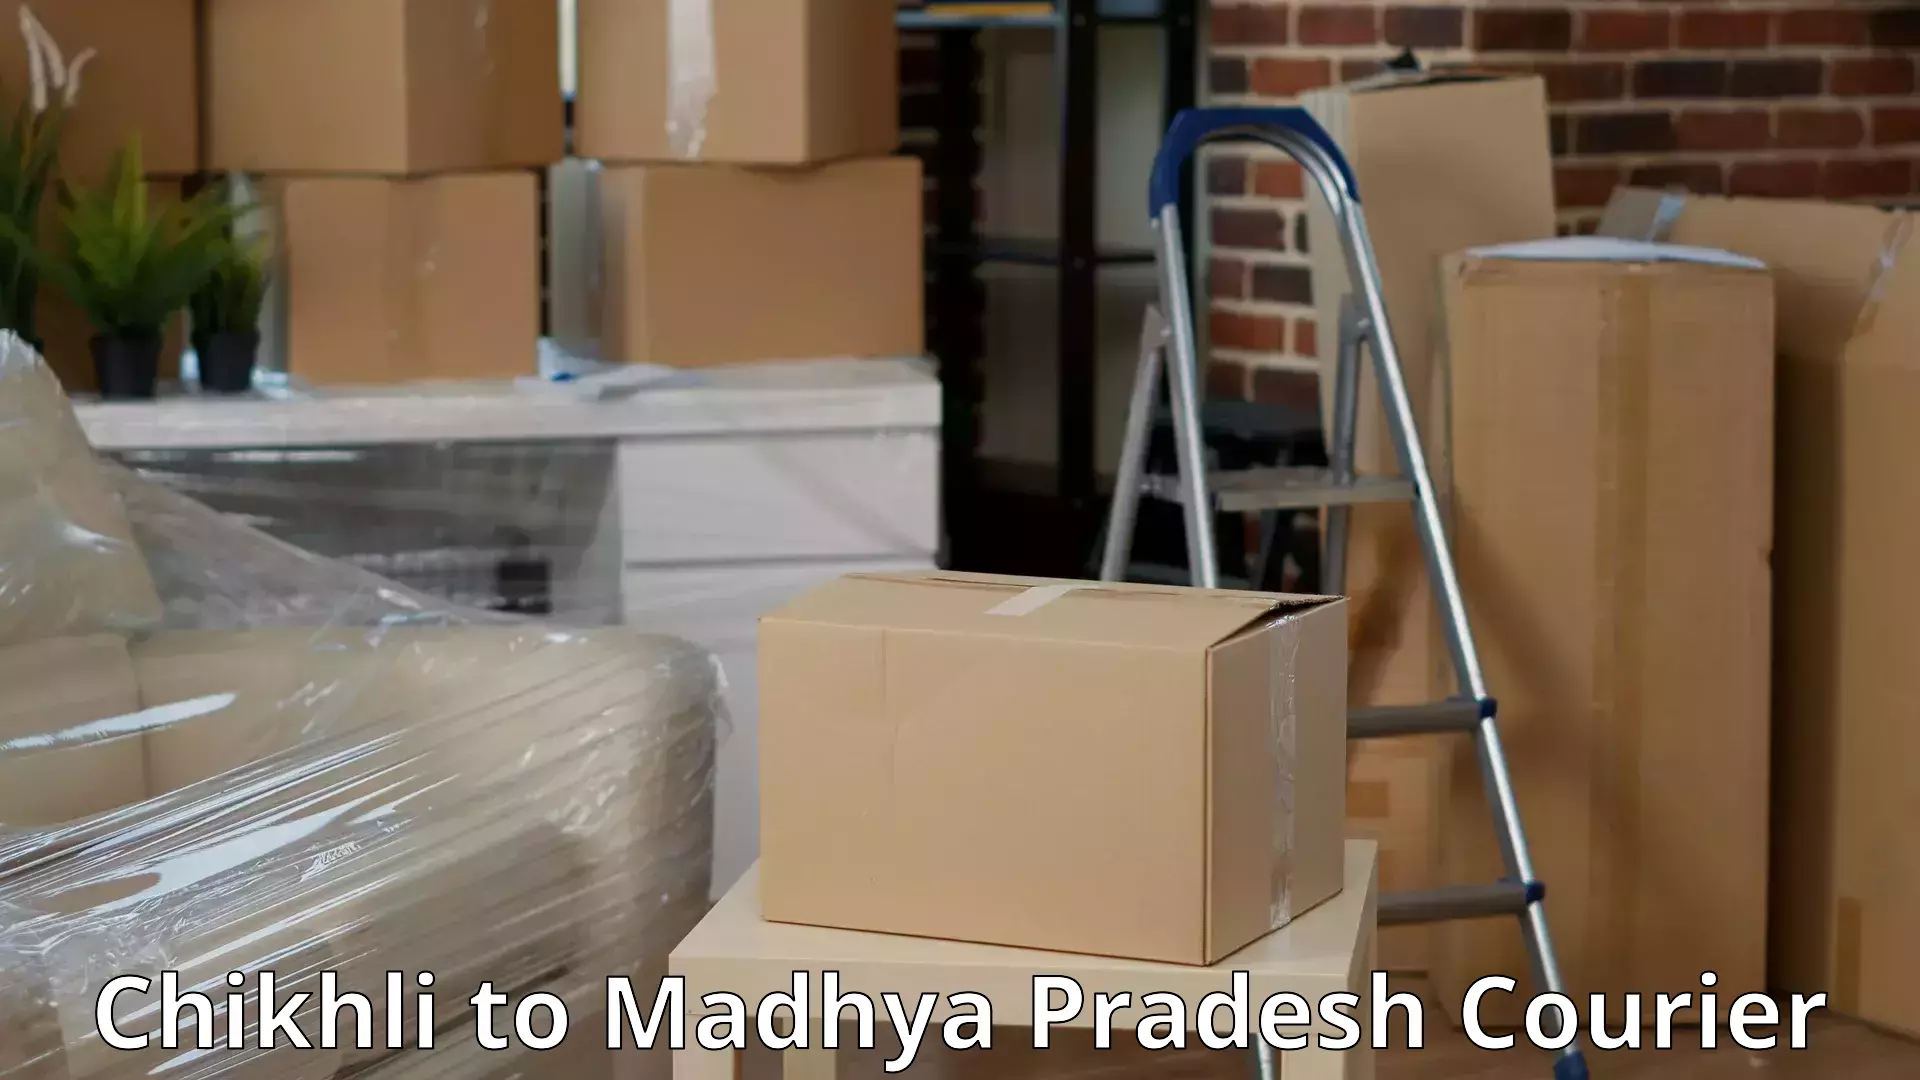 High-quality moving services Chikhli to Madhya Pradesh